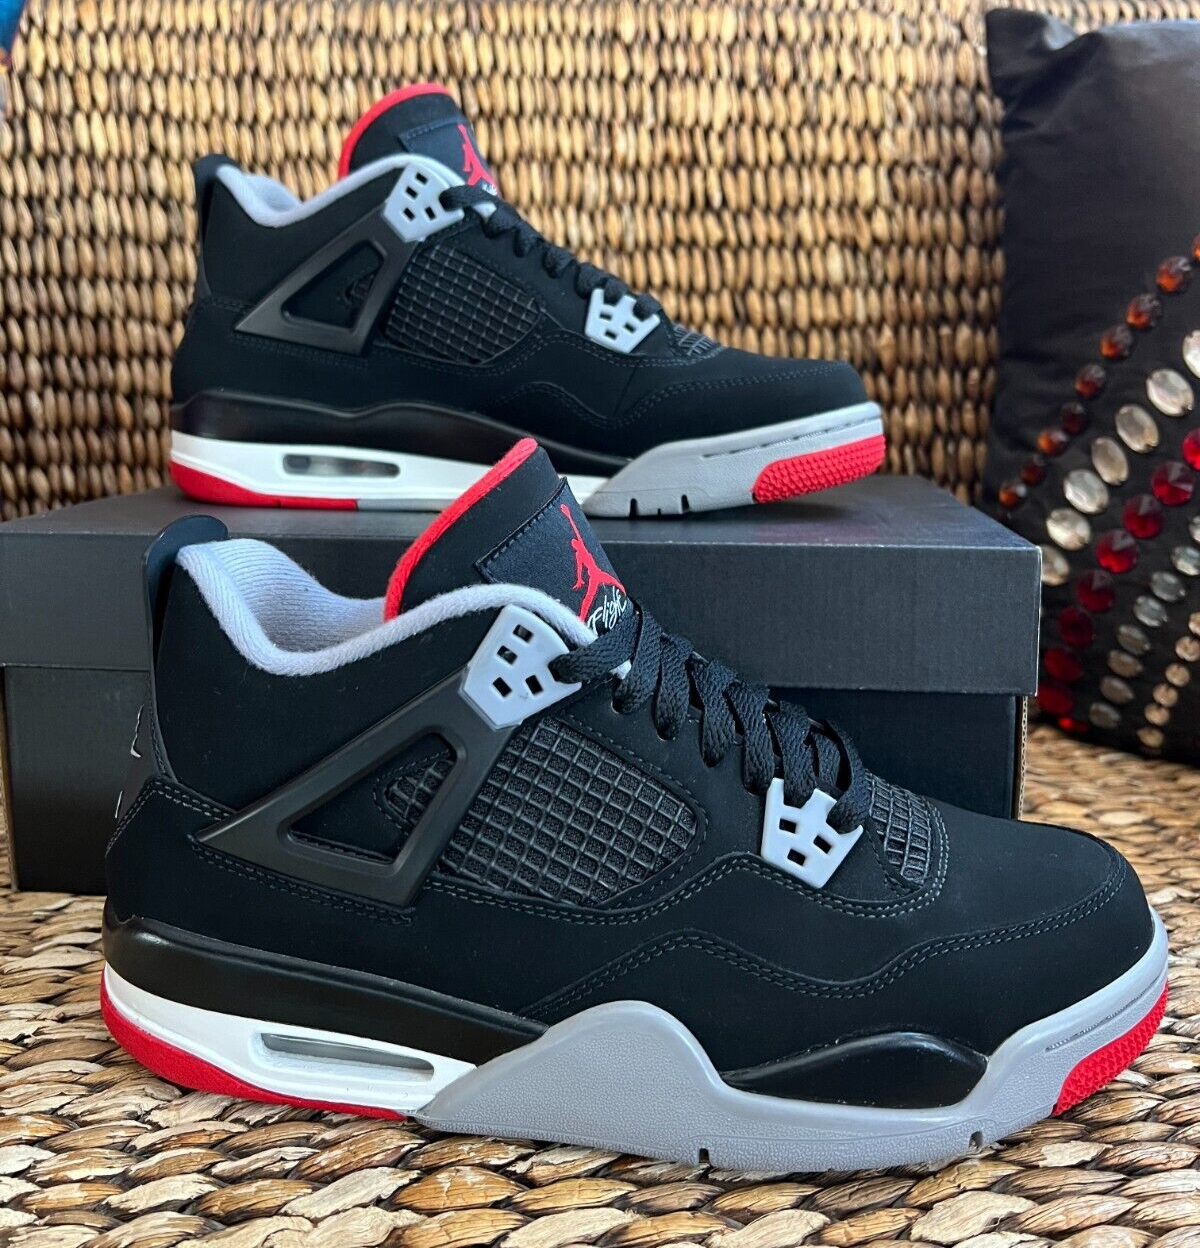 Persuasive socks imply Air Jordan 4 Retro OG GS Bred 2019 Black Cement 2019 Size 7 / 8.5 W  408454-060 | eBay